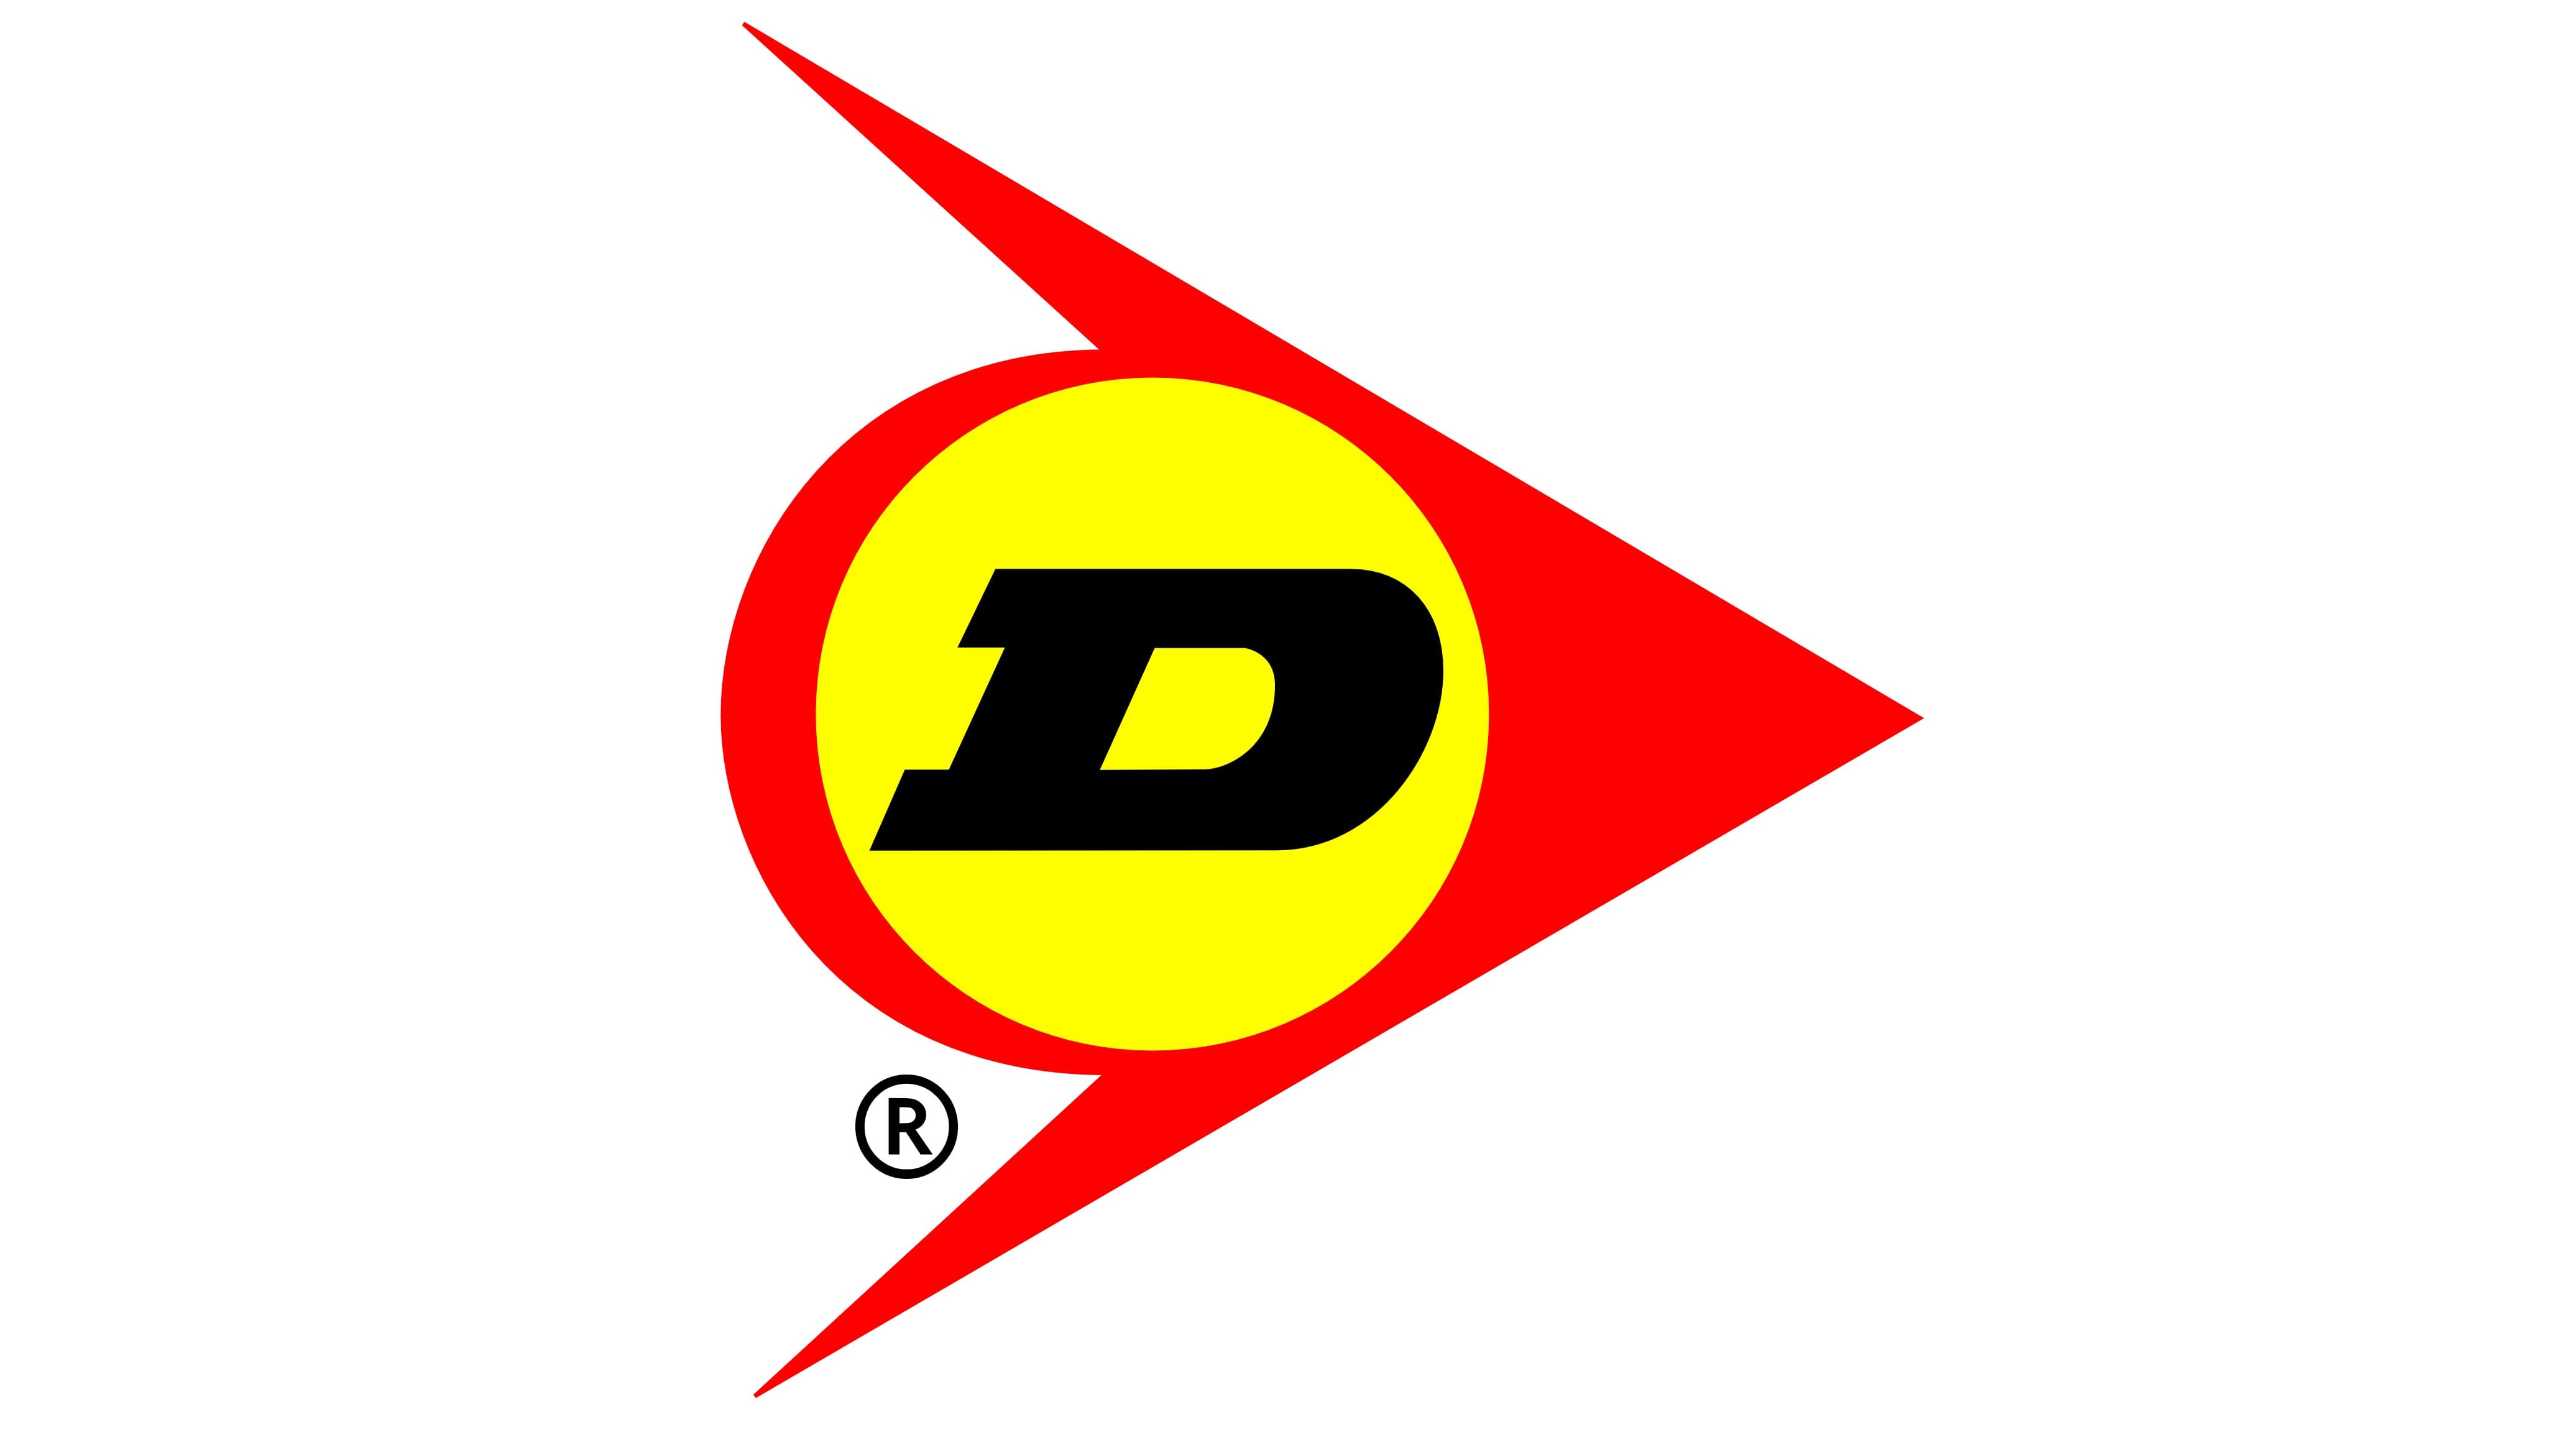 https://1000logos.net/wp-content/uploads/2020/06/Dunlop-emblem.jpg